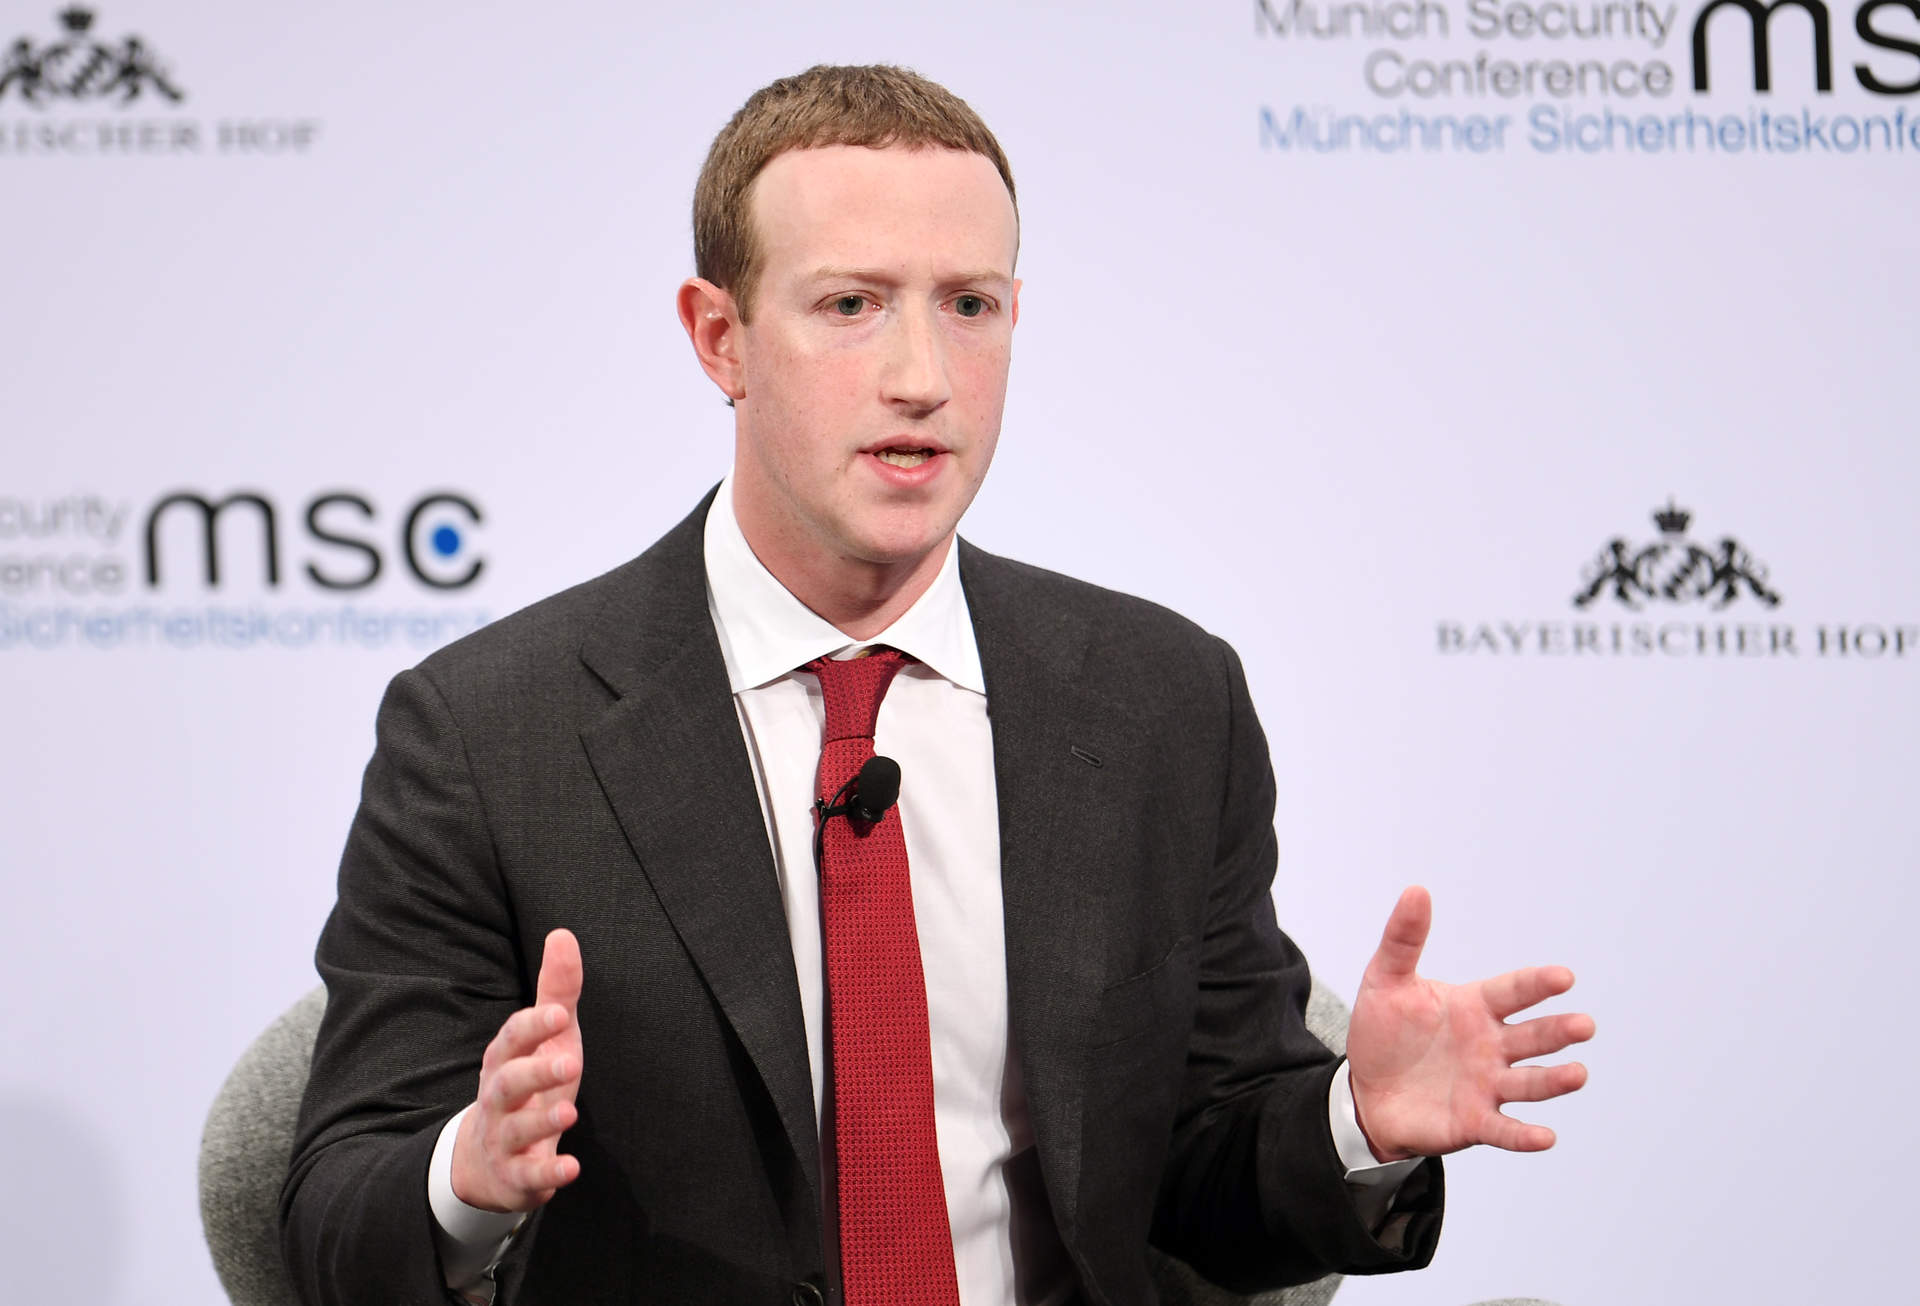 Meta (Facebook) planea despidos a gran escala para recortar costes, según 'The Wall Street Journal'